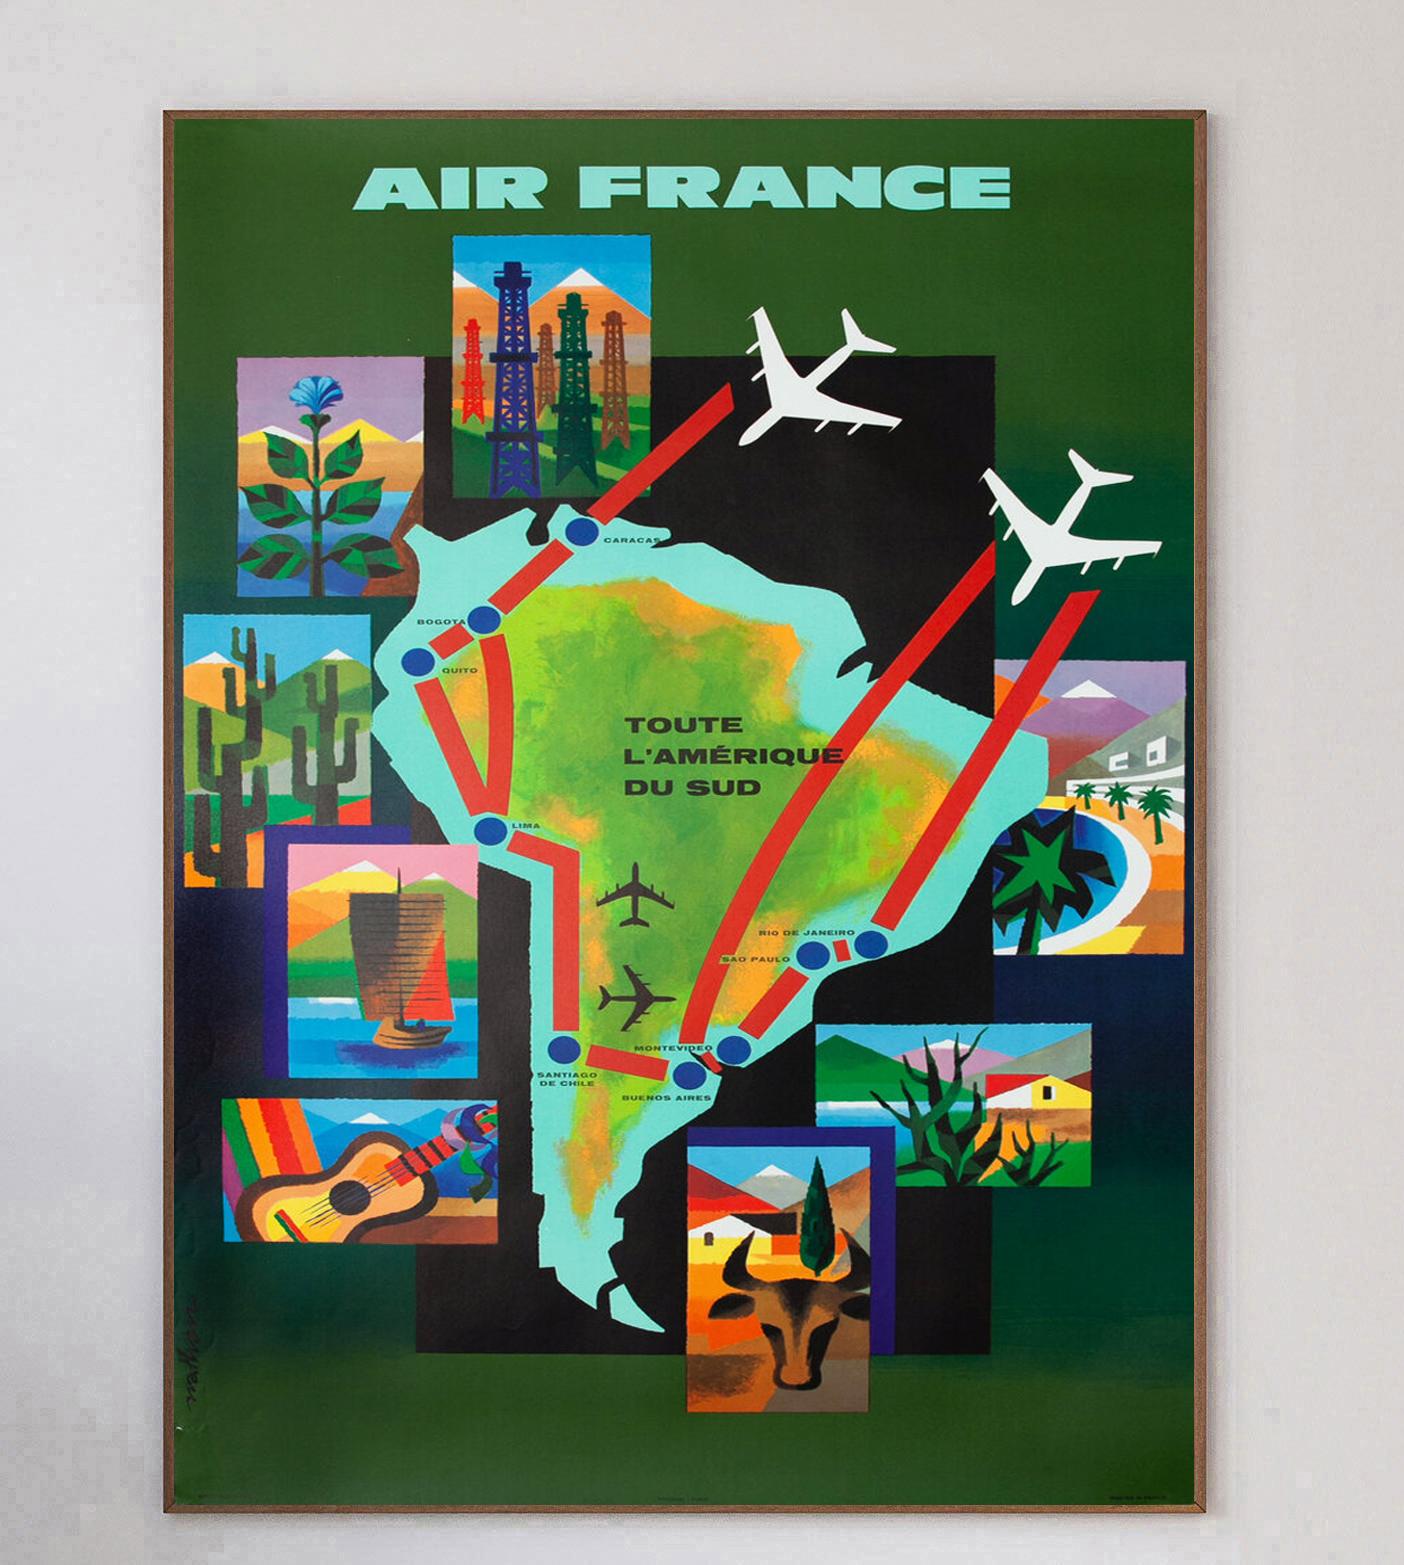 Réalisée par l'artiste français Nathan (Jacques Nathan-Garamond), qui a travaillé sur plusieurs affiches d'Air France de l'époque, cette affiche promouvant les lignes aériennes vers l'Amérique du Sud a été créée en 1965. Air France a été créée en